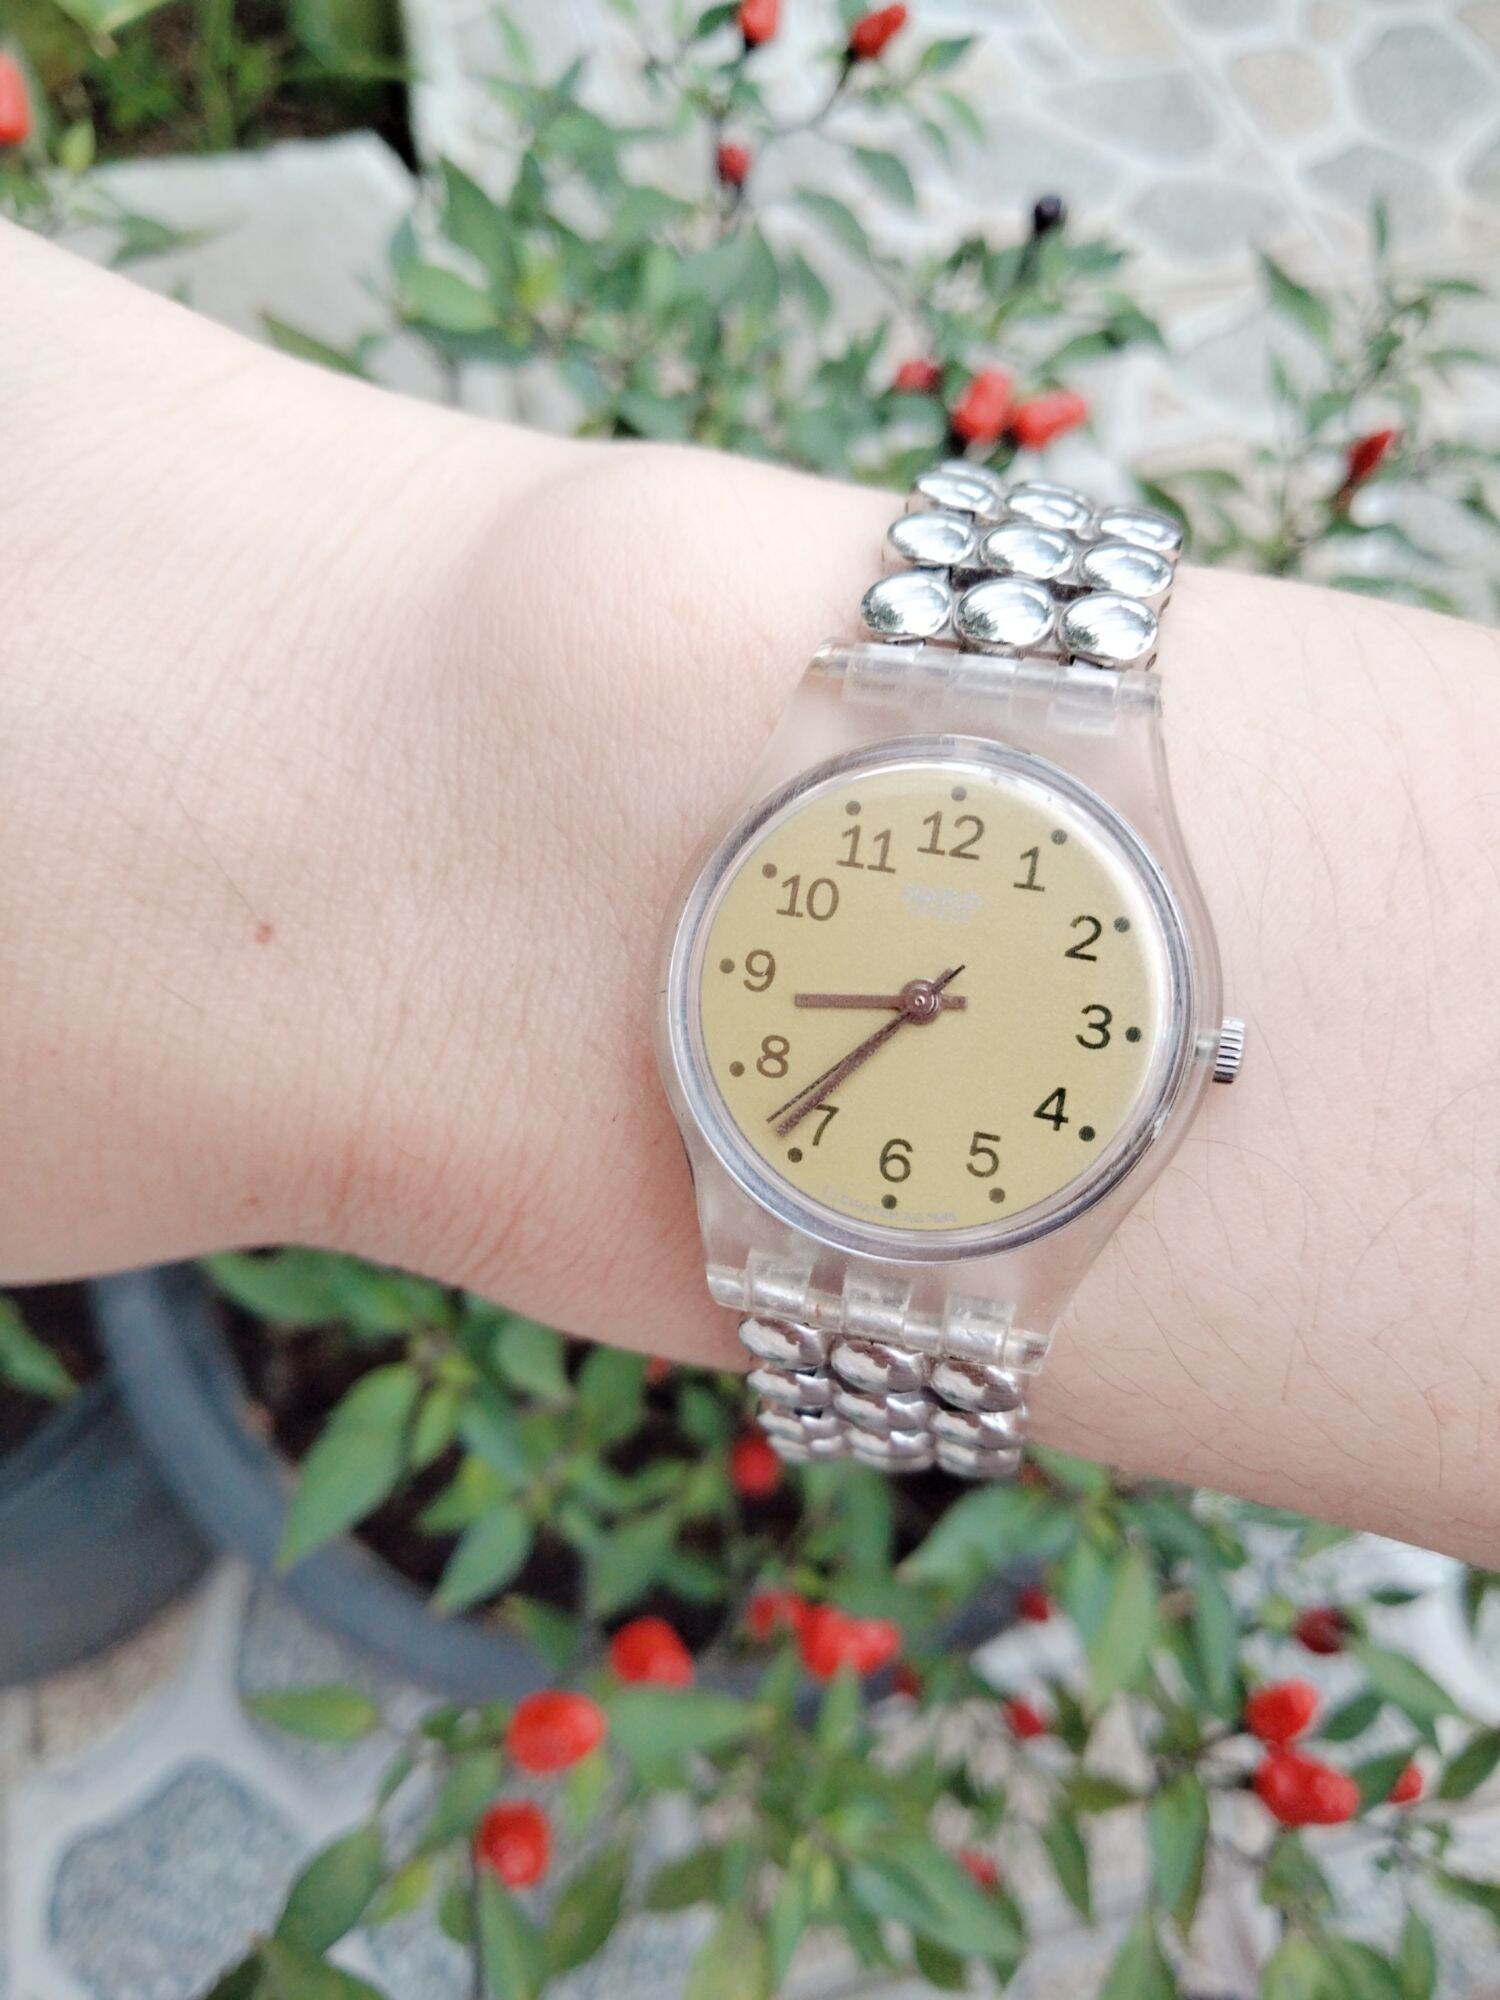 1 đồng hồ Nữ hiệu Swatch máy Thụy sỹ.Size mặt 25